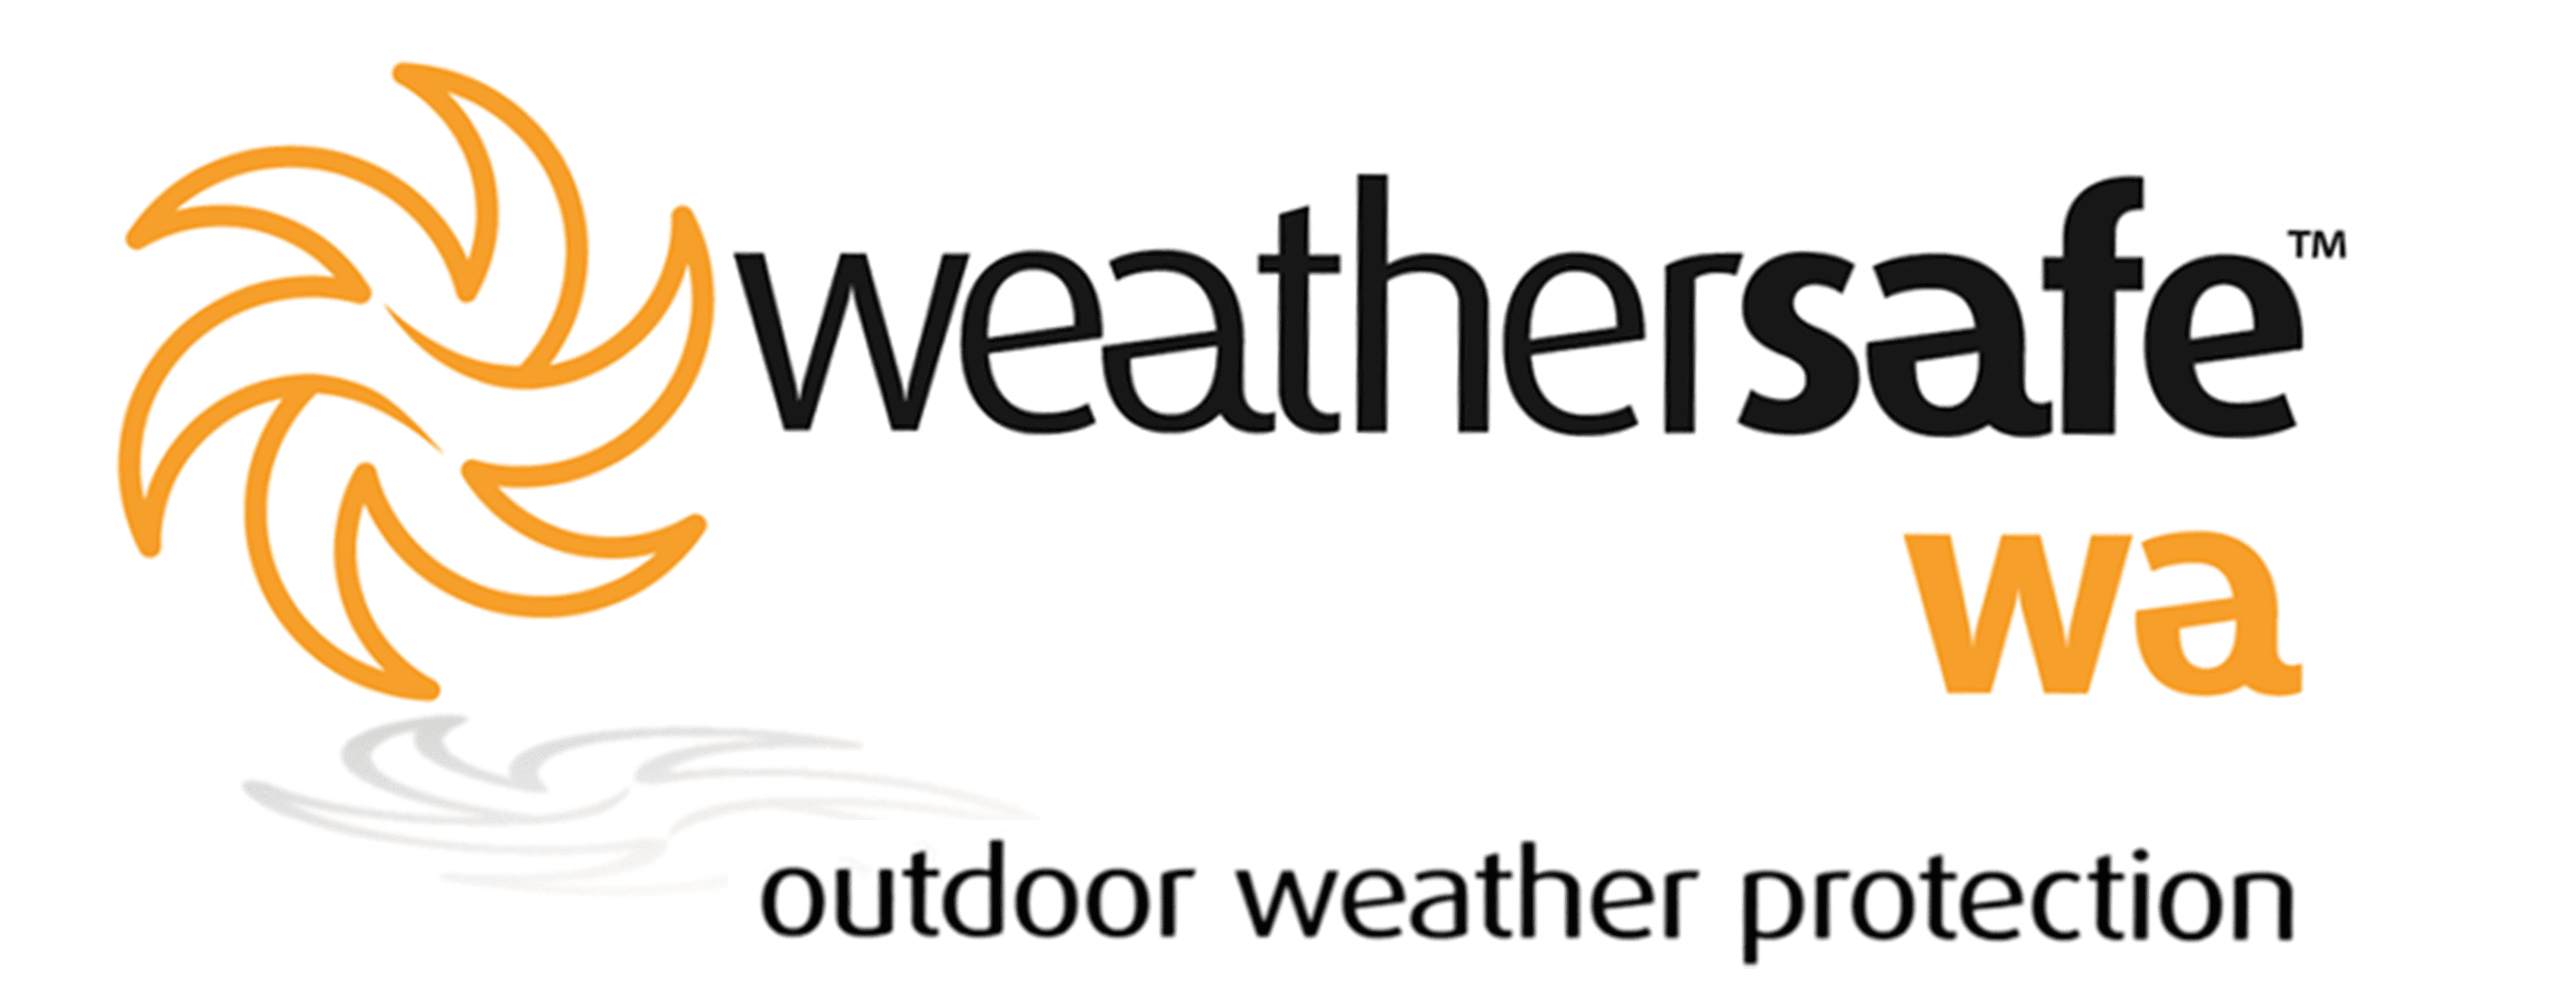 weathersafe wa logo